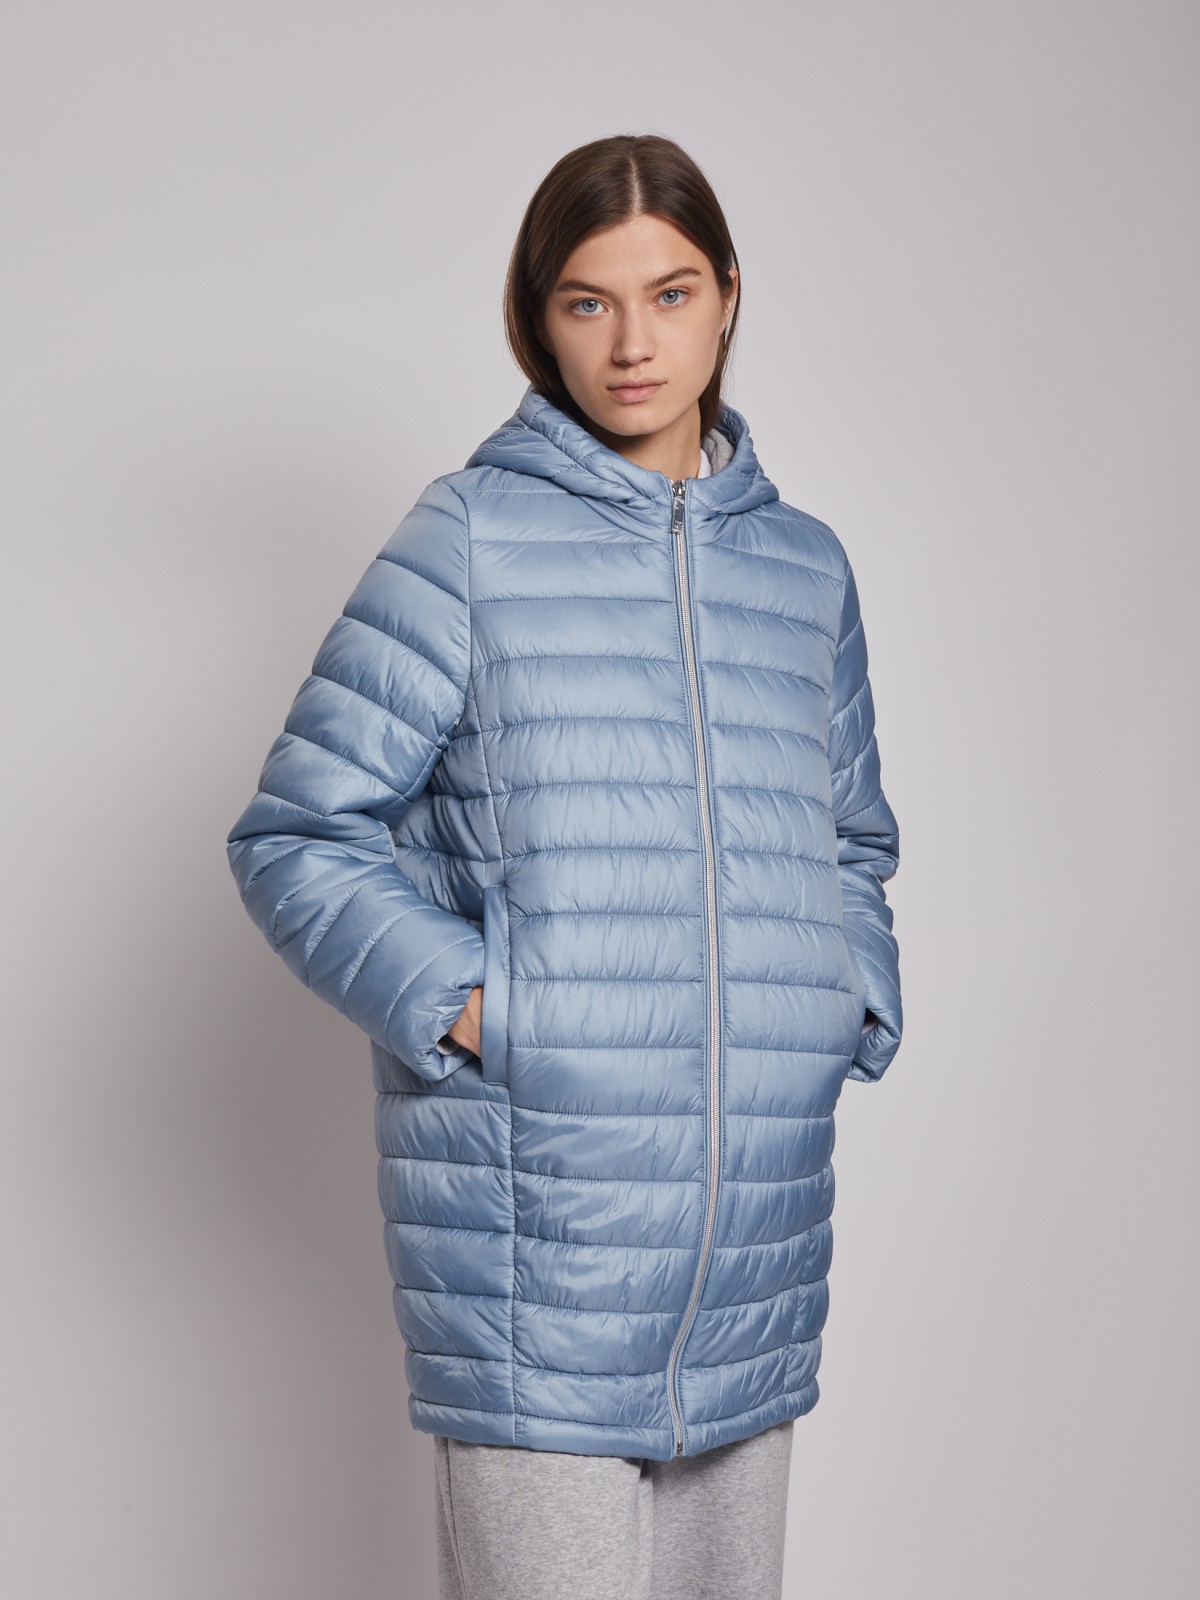 Утеплённое пальто с капюшоном zolla 022335212024, цвет голубой, размер XS - фото 3